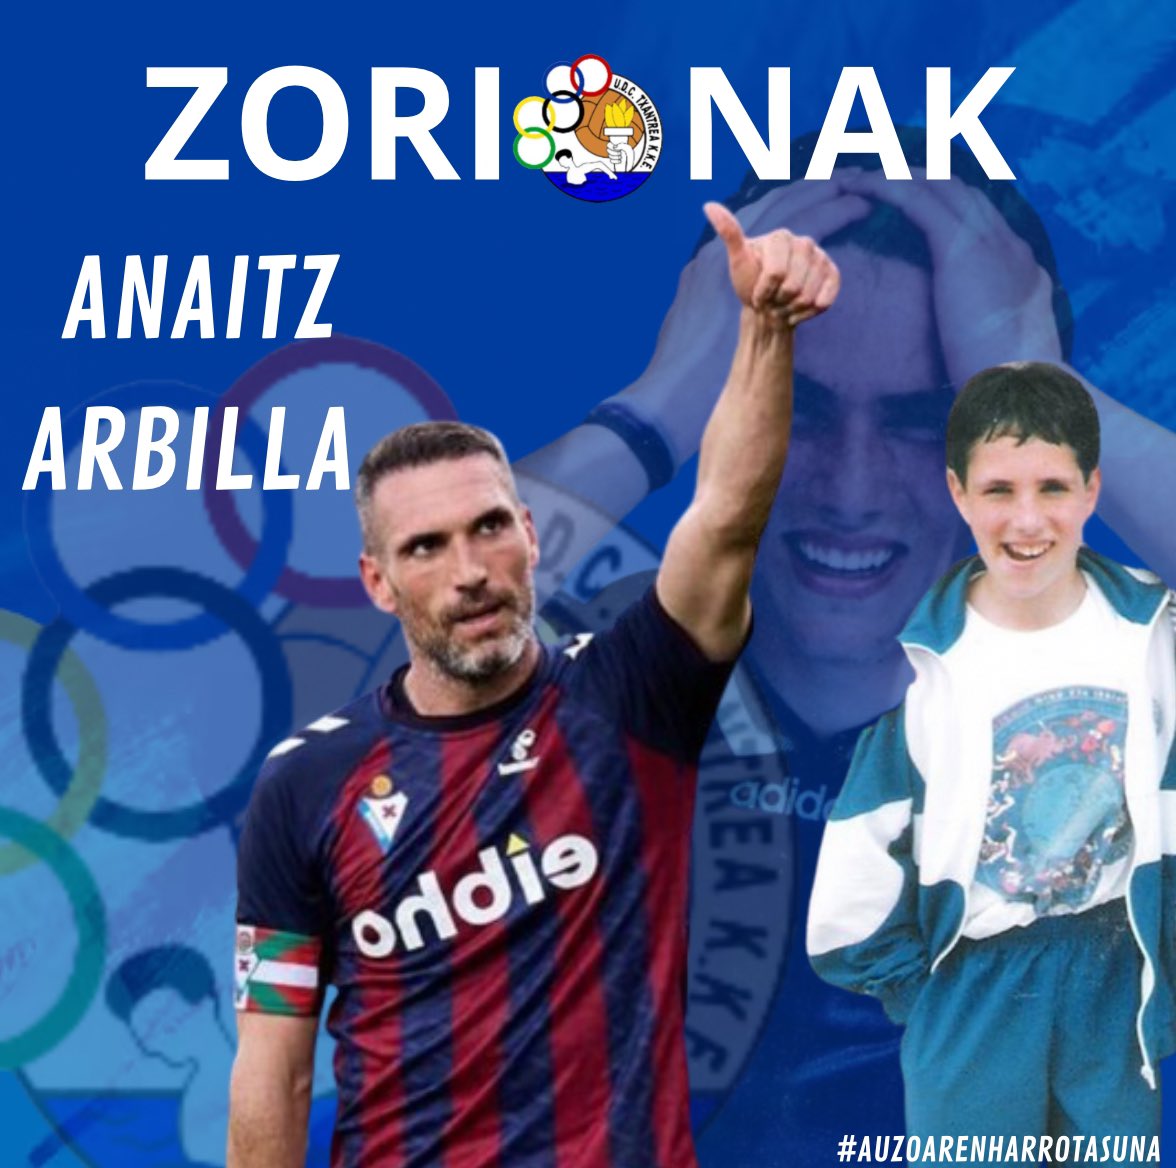 🎂MUCHAS FELICIDADES ANAITZ🎂 Hoy cumple años nuestro ex-jugador Anaitz Arbilla . Desde nuestro club , deseamos que pases un bonito día y que lo disfrutes mucho!!! Nos vemos pronto🔵⚪️ #Txantrea